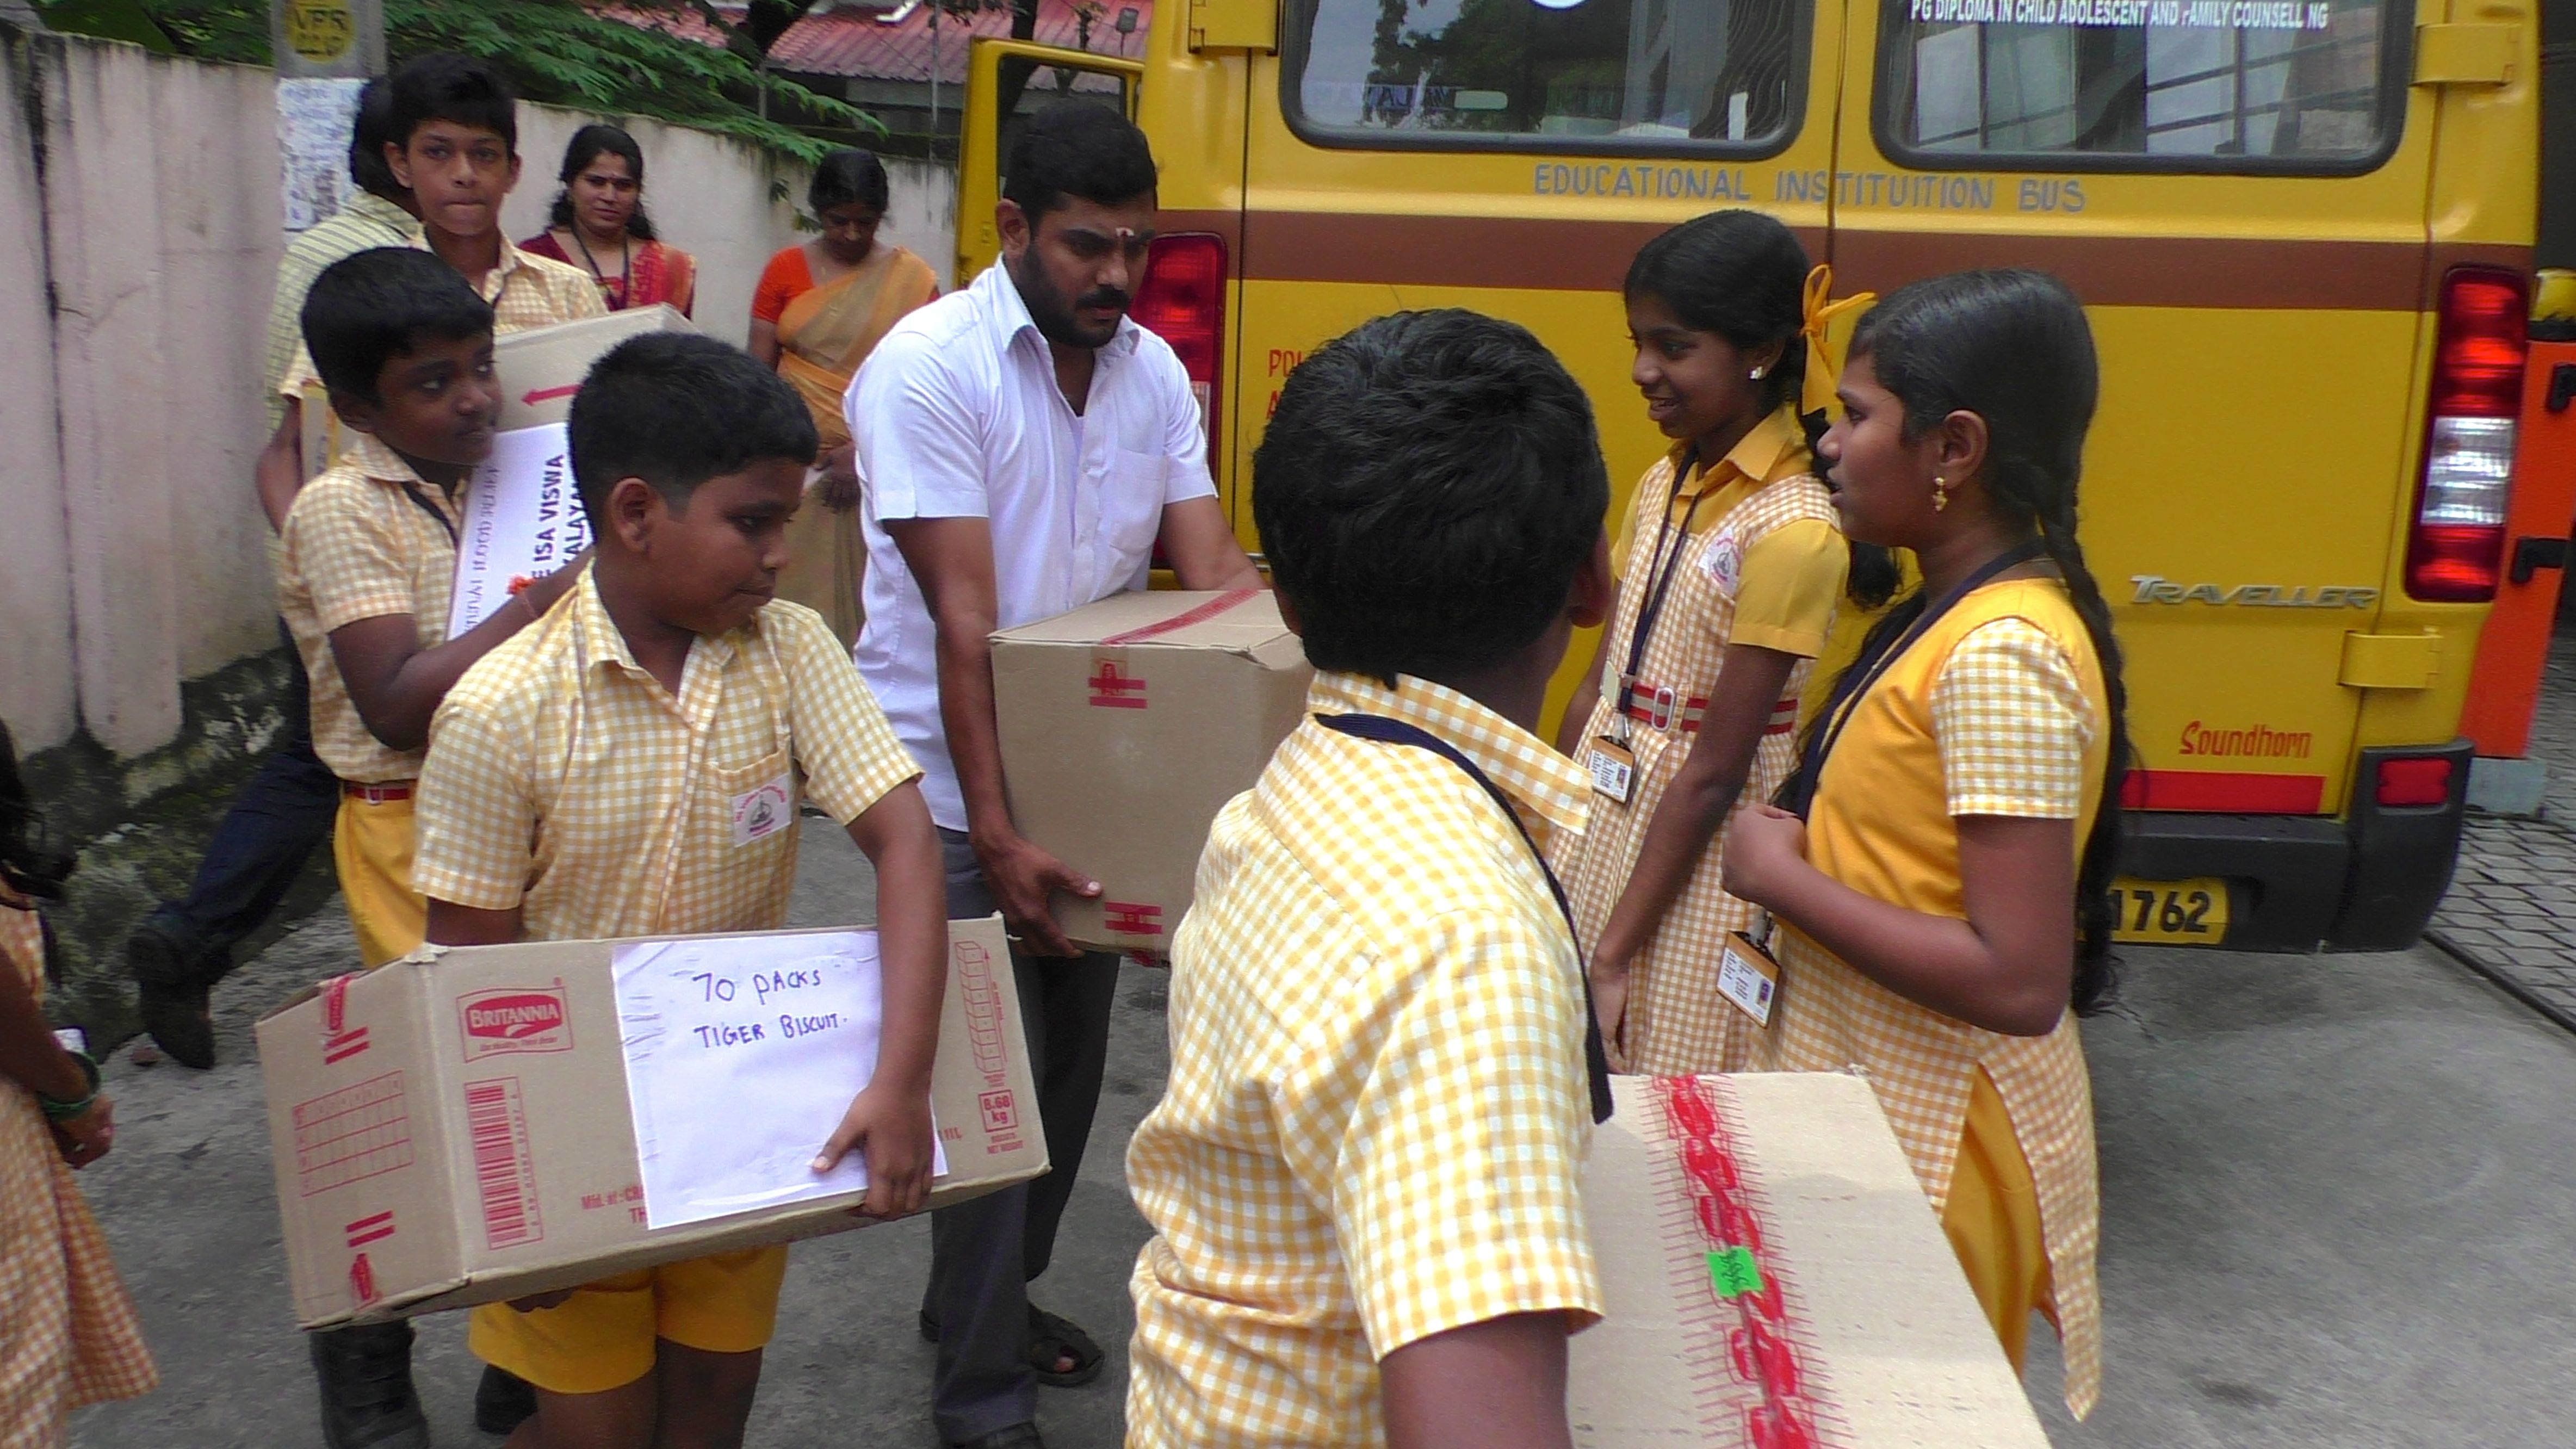 Students of Isa Viswa Vidyalayam unload materials for Chennai relief